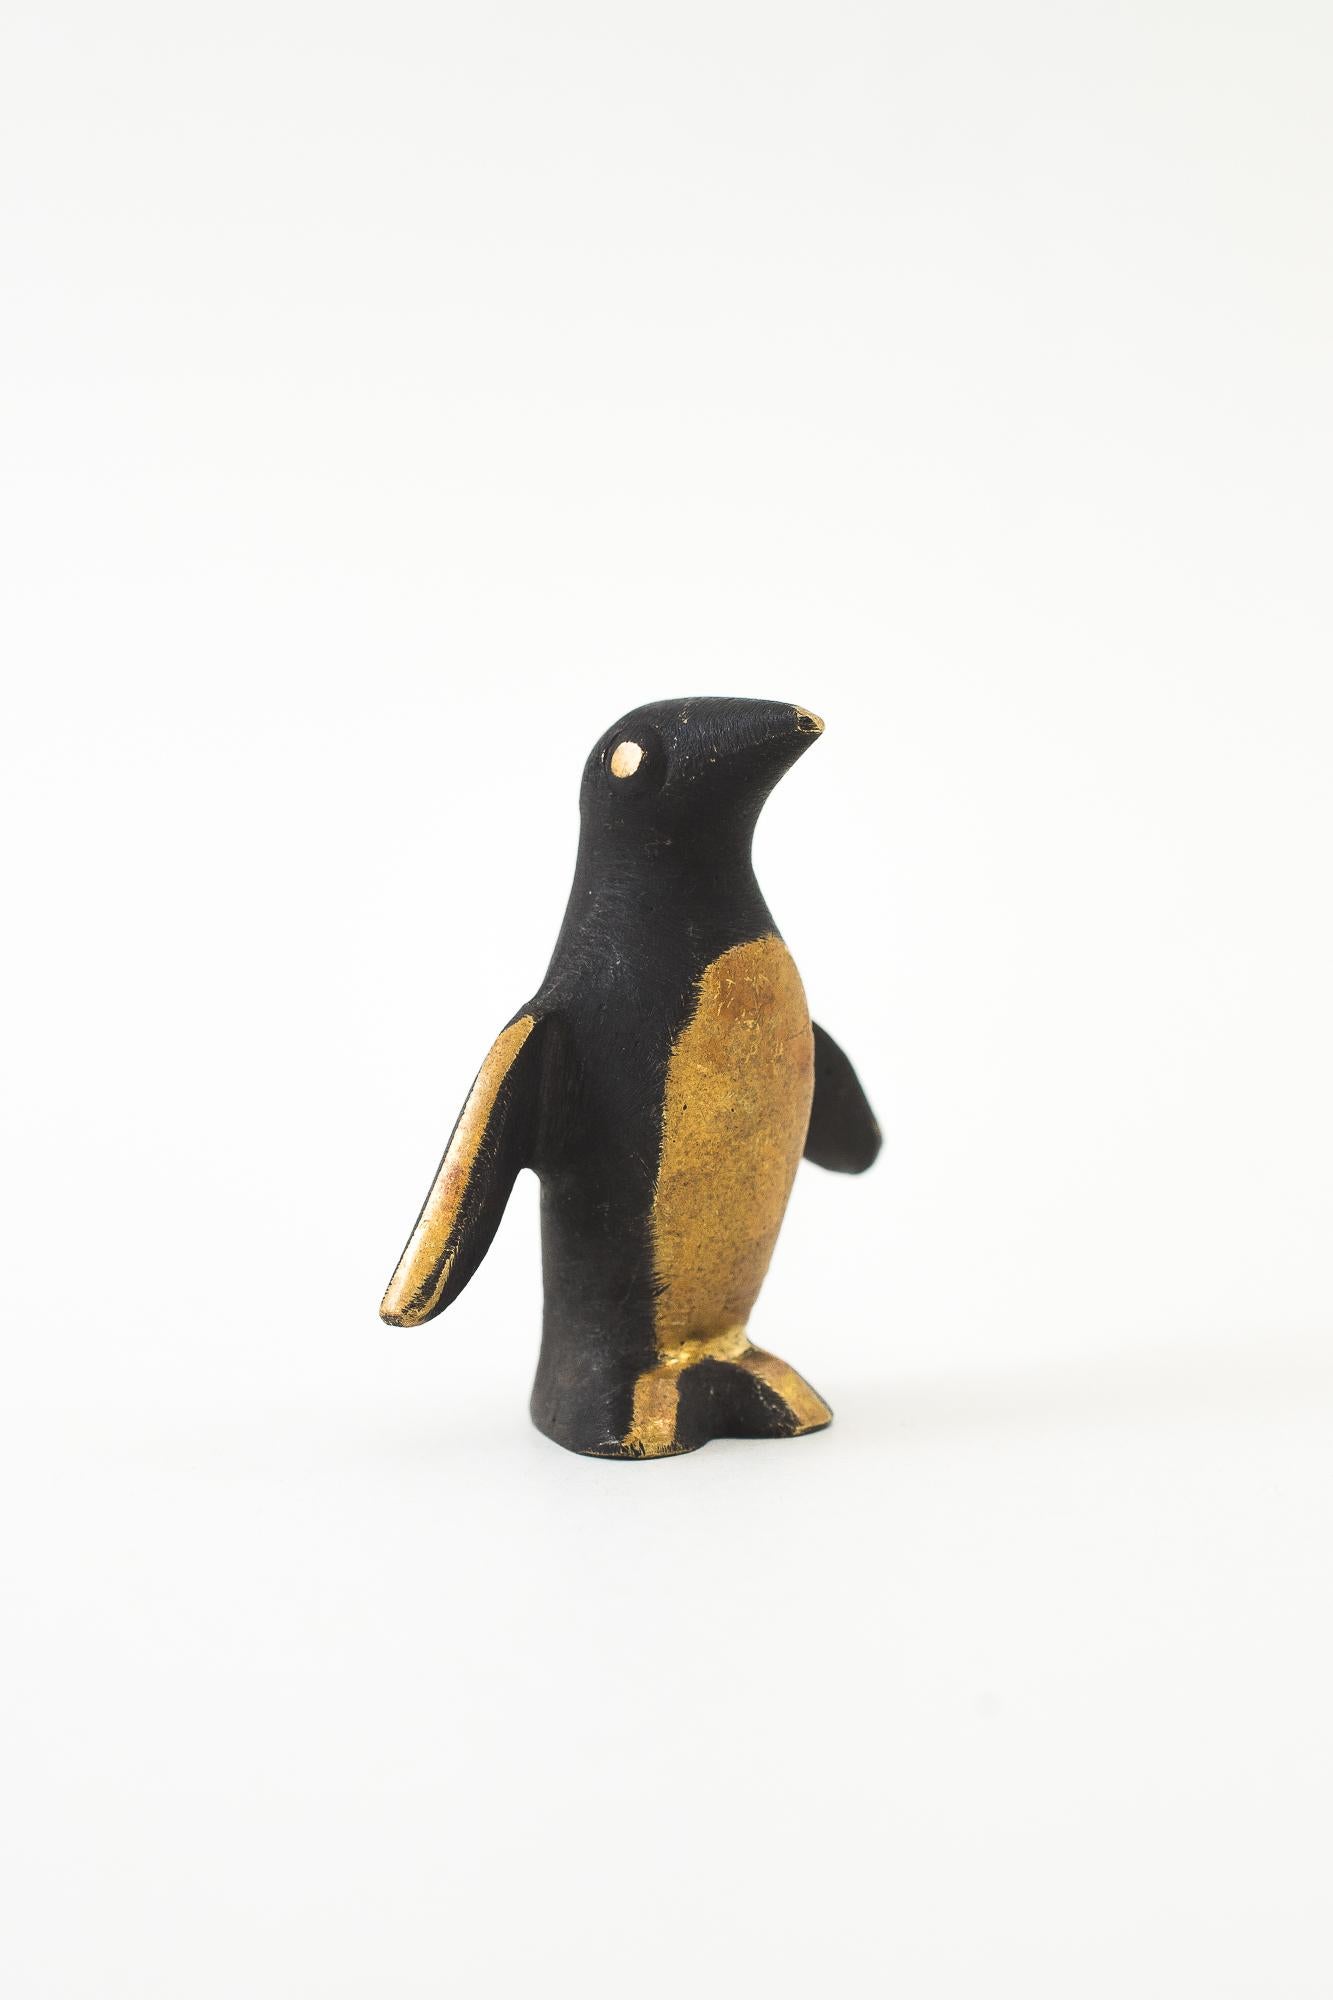 Walter Bosse penguin figurine vienna around 1950s ( Marked )
Original condition.